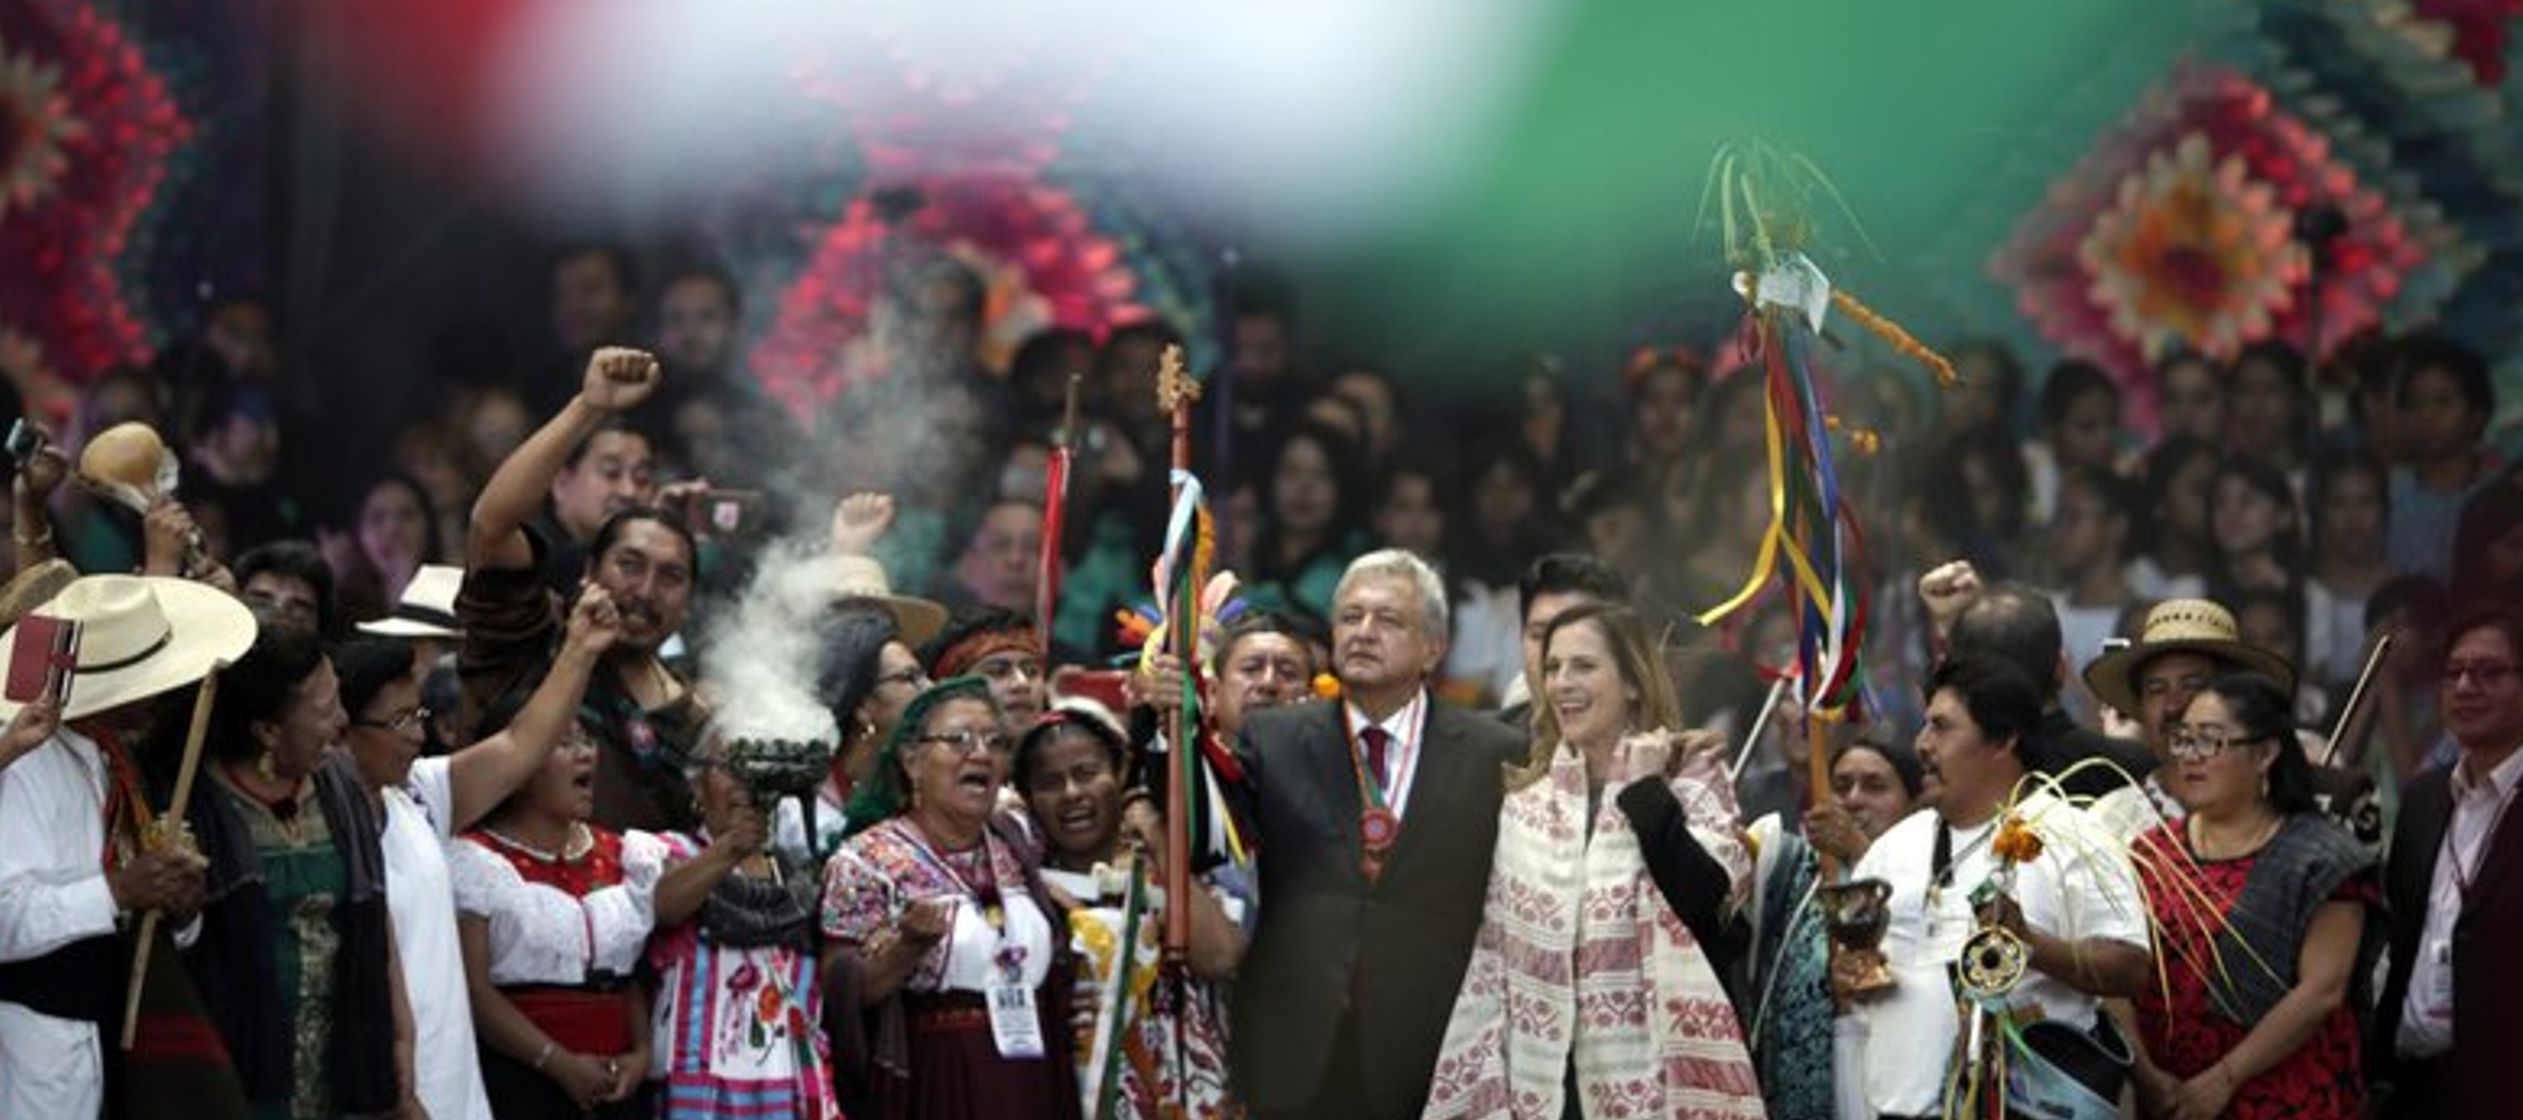 López Obrador prestó juramento a su cargo el sábado. Más de 30 millones...